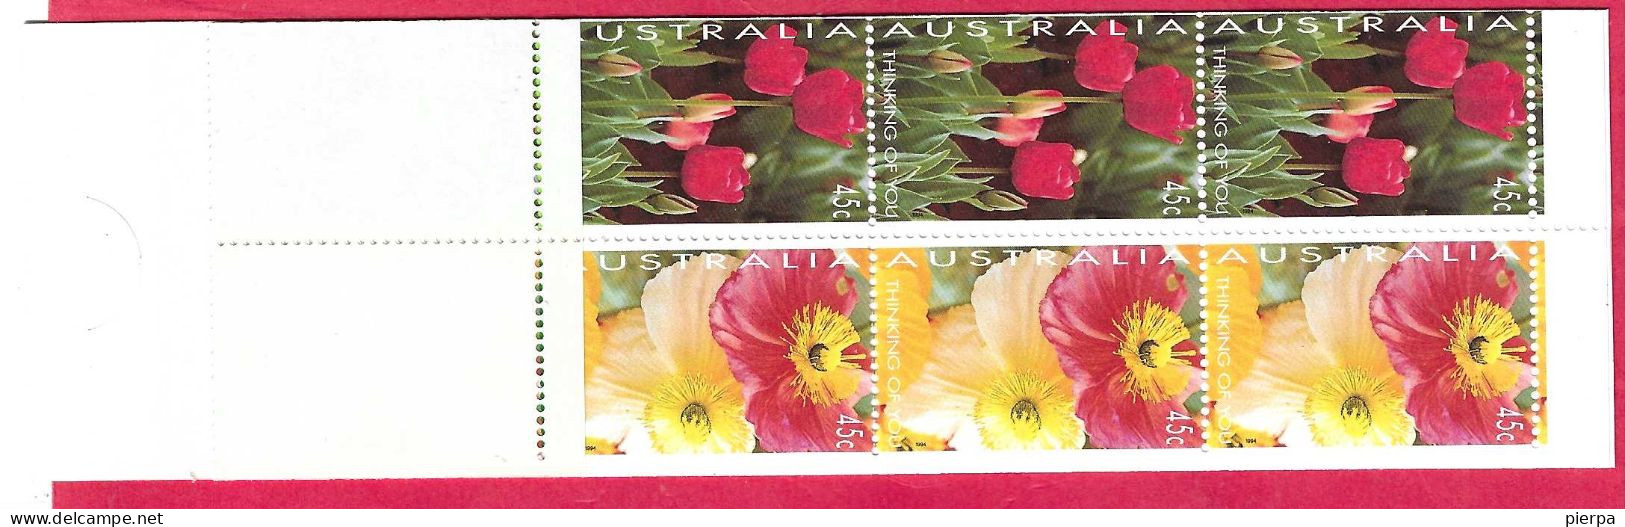 AUSTRALIA - 1994 - FIORI -  NUOVO MNH ** (YVERT C 1350a - MICHEL SB 81) - Booklets